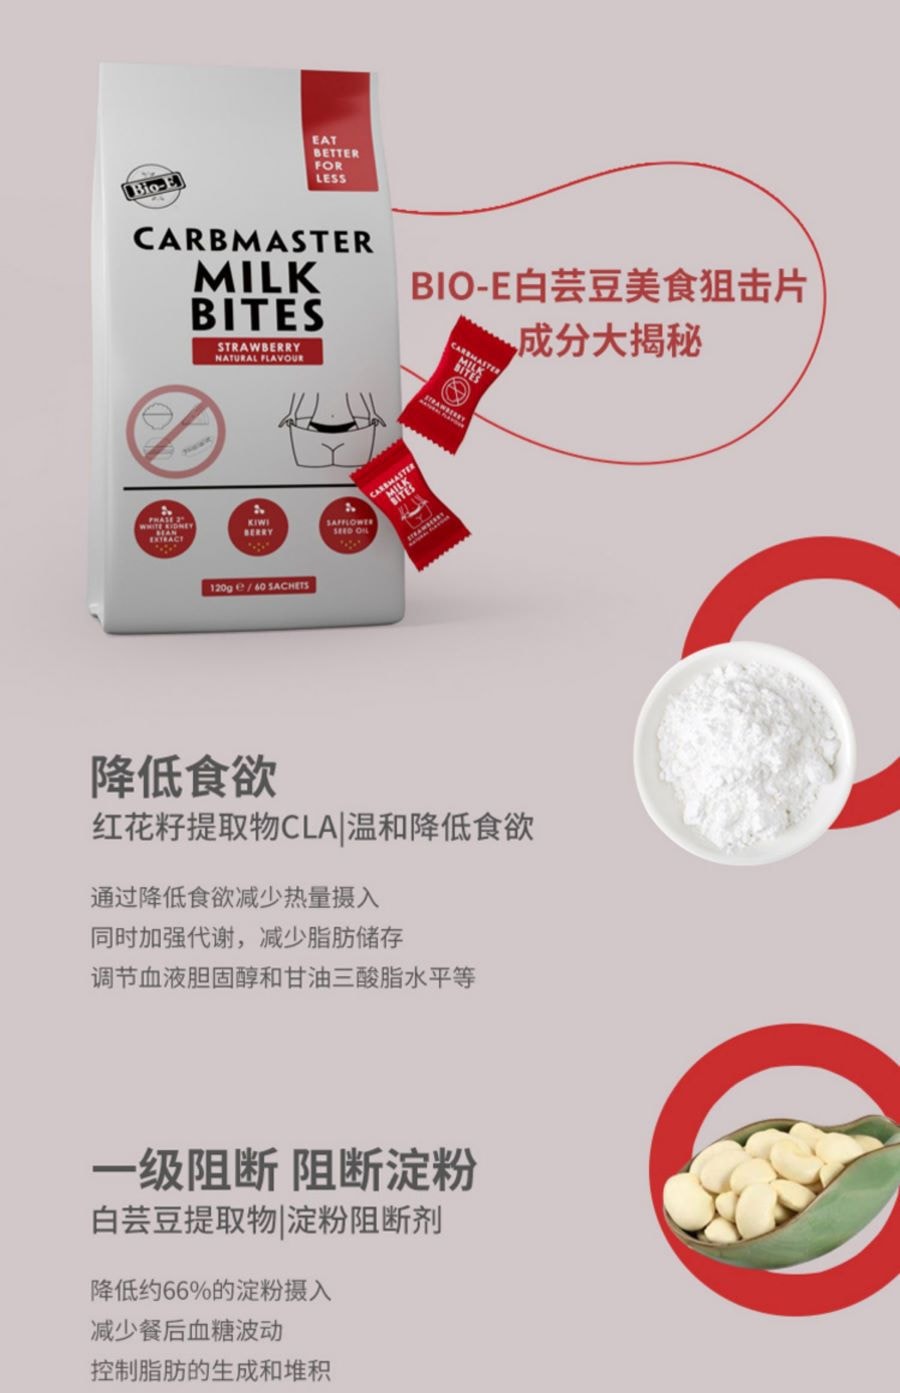 澳洲BIO-E白芸豆酵素奶片草莓味120g/60小袋(最新包装 澳洲本土版 无中文标签)